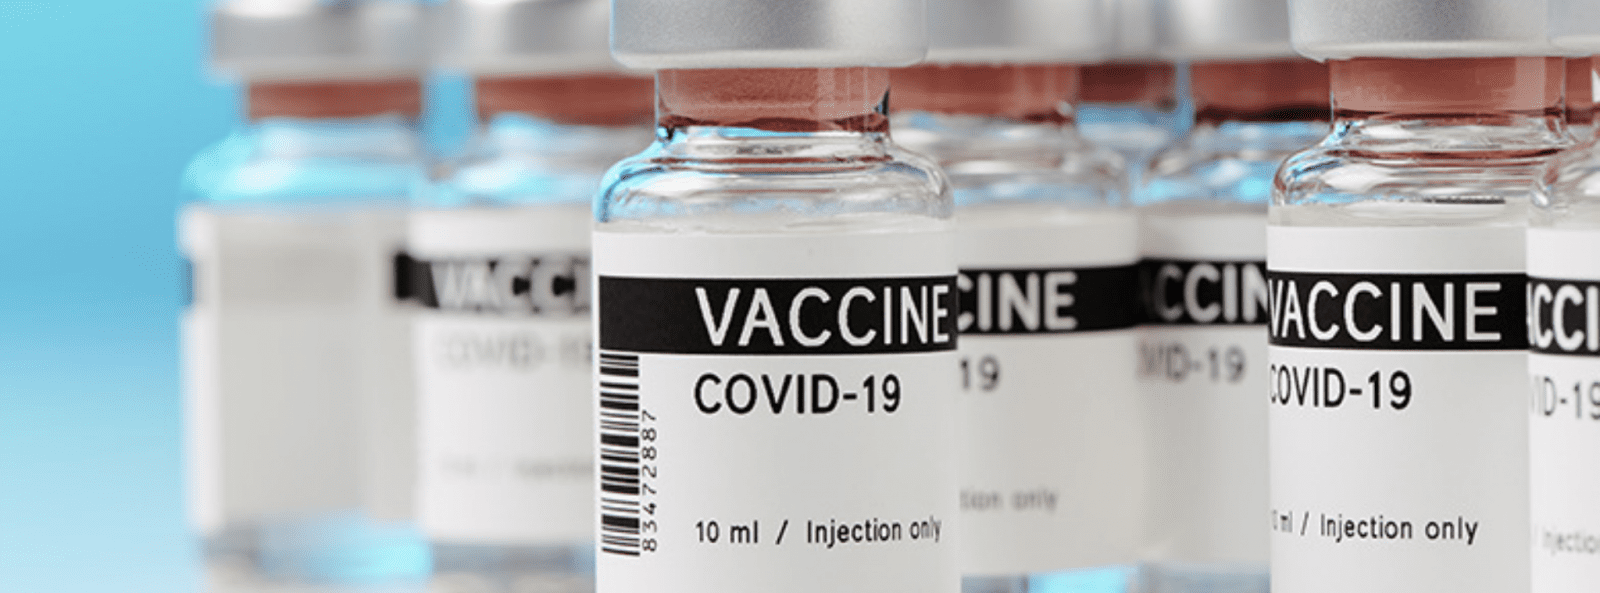 Covid vaccine banner